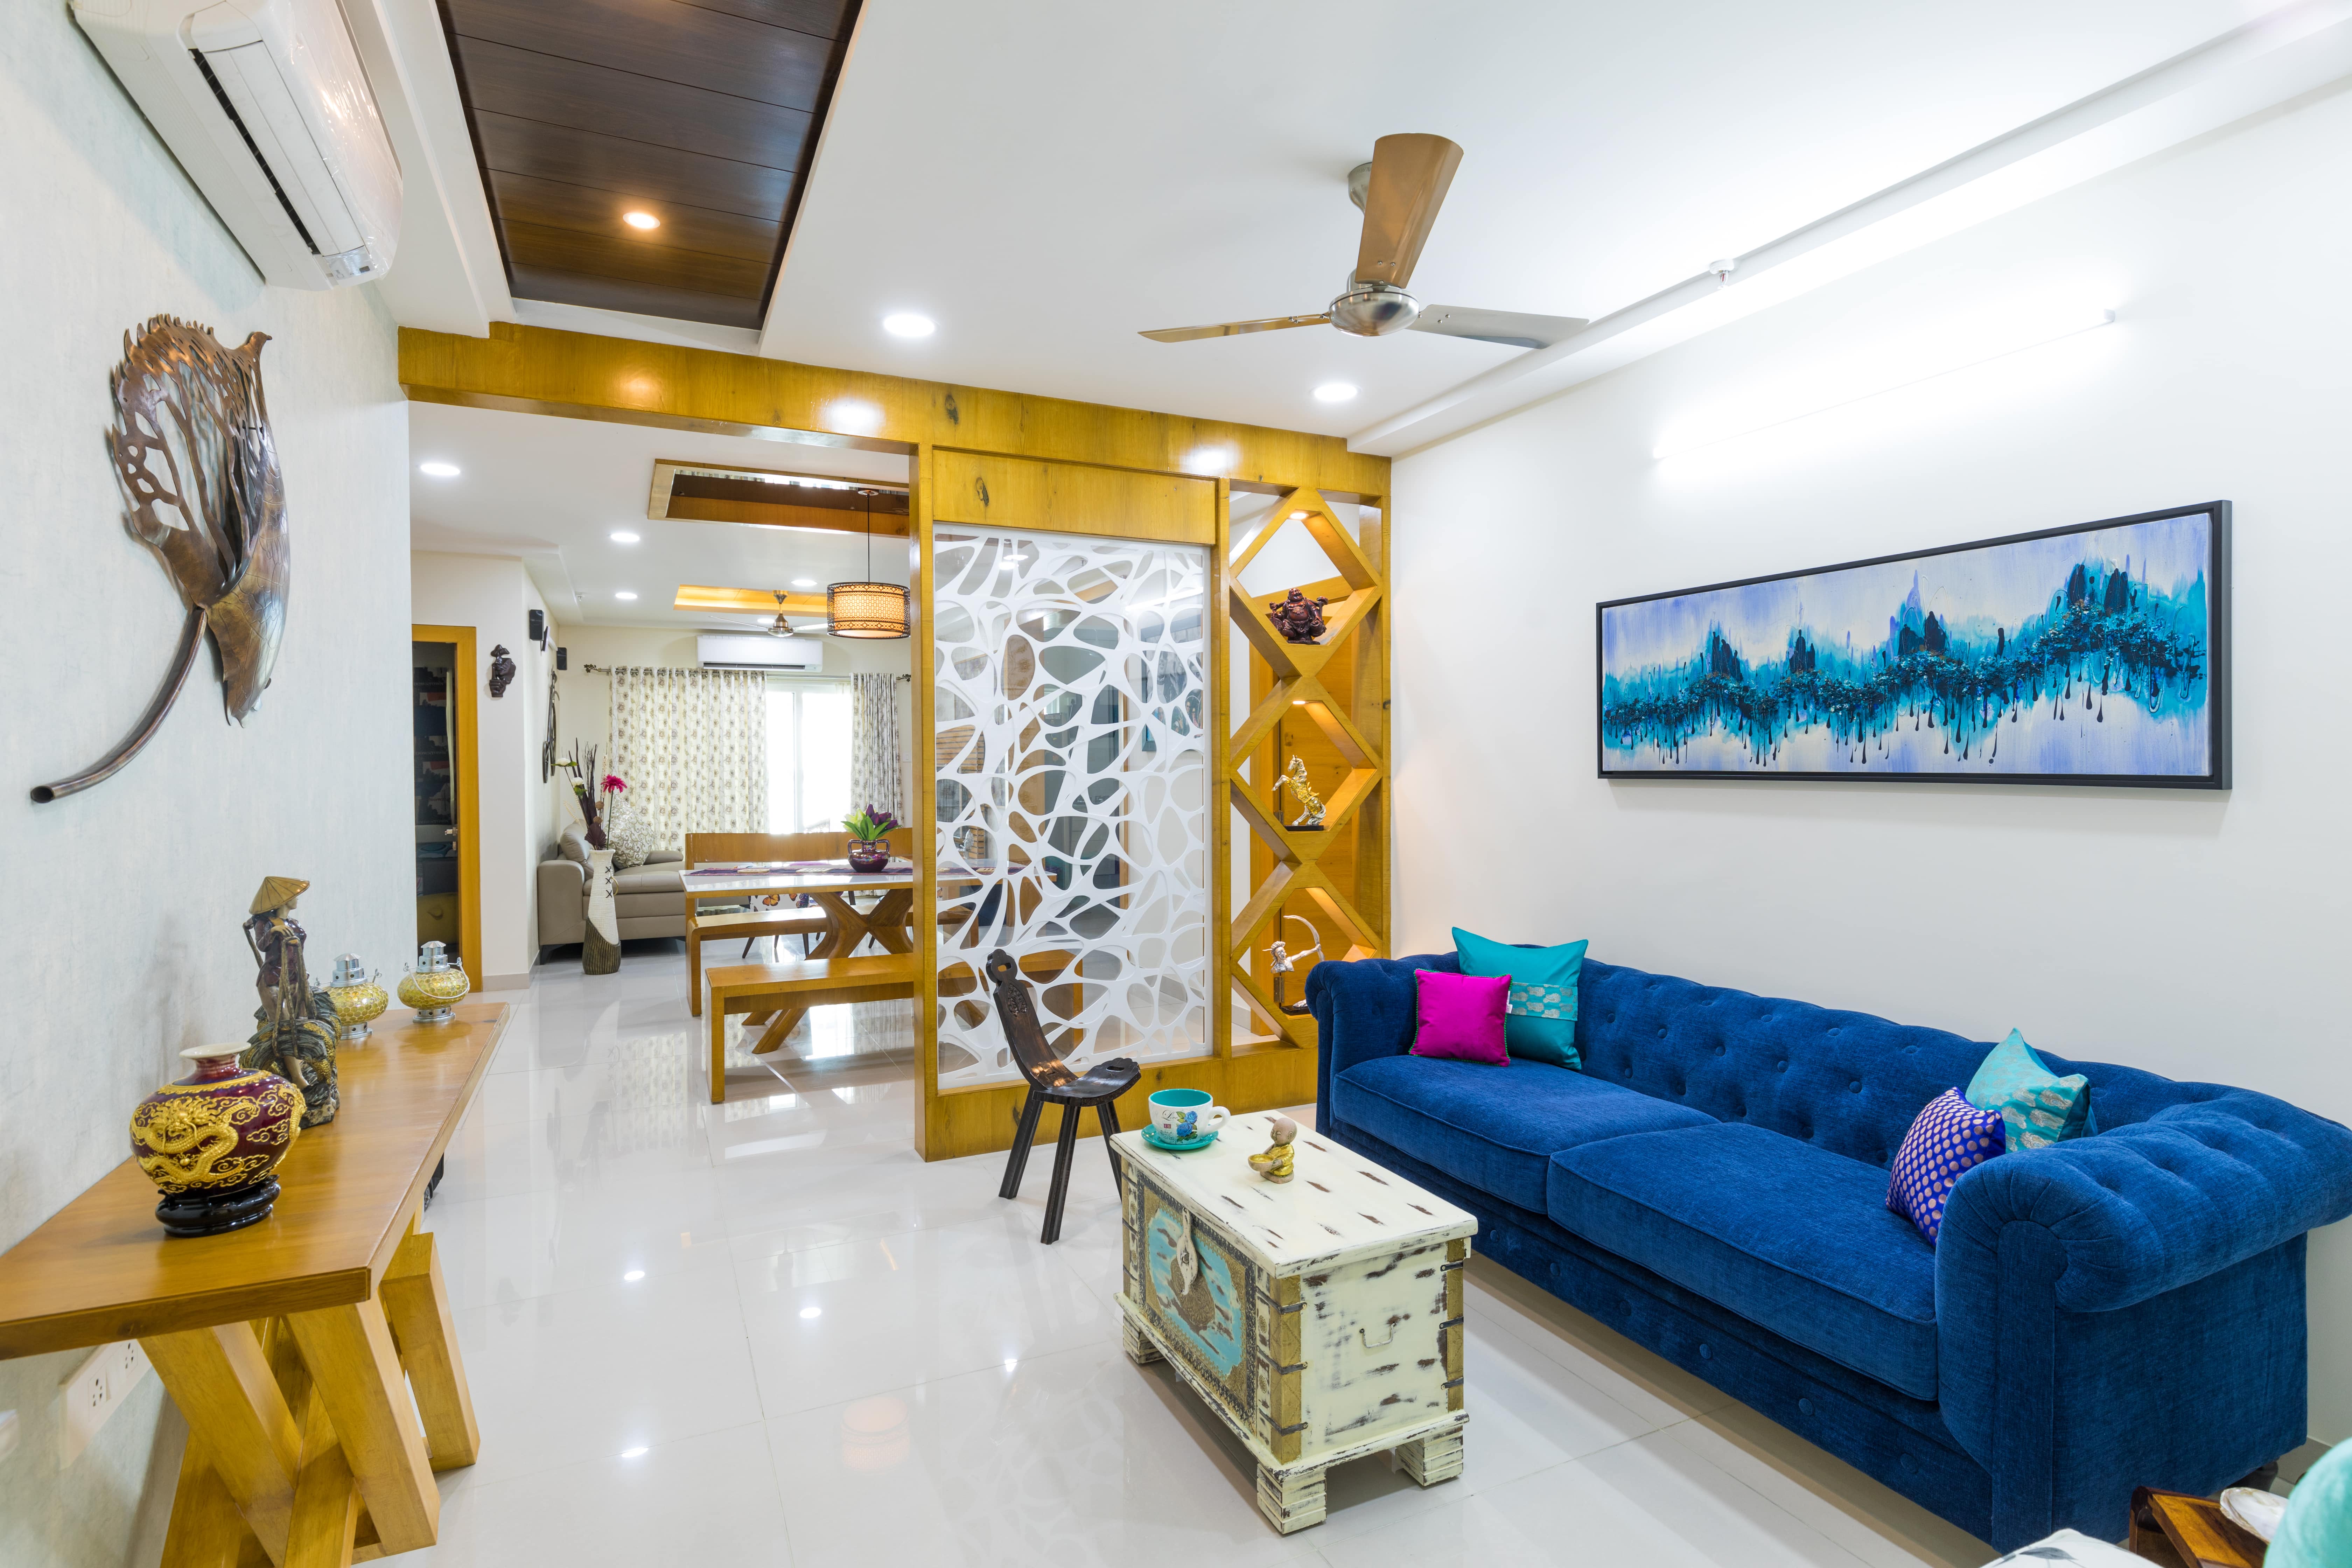 Indian interior design